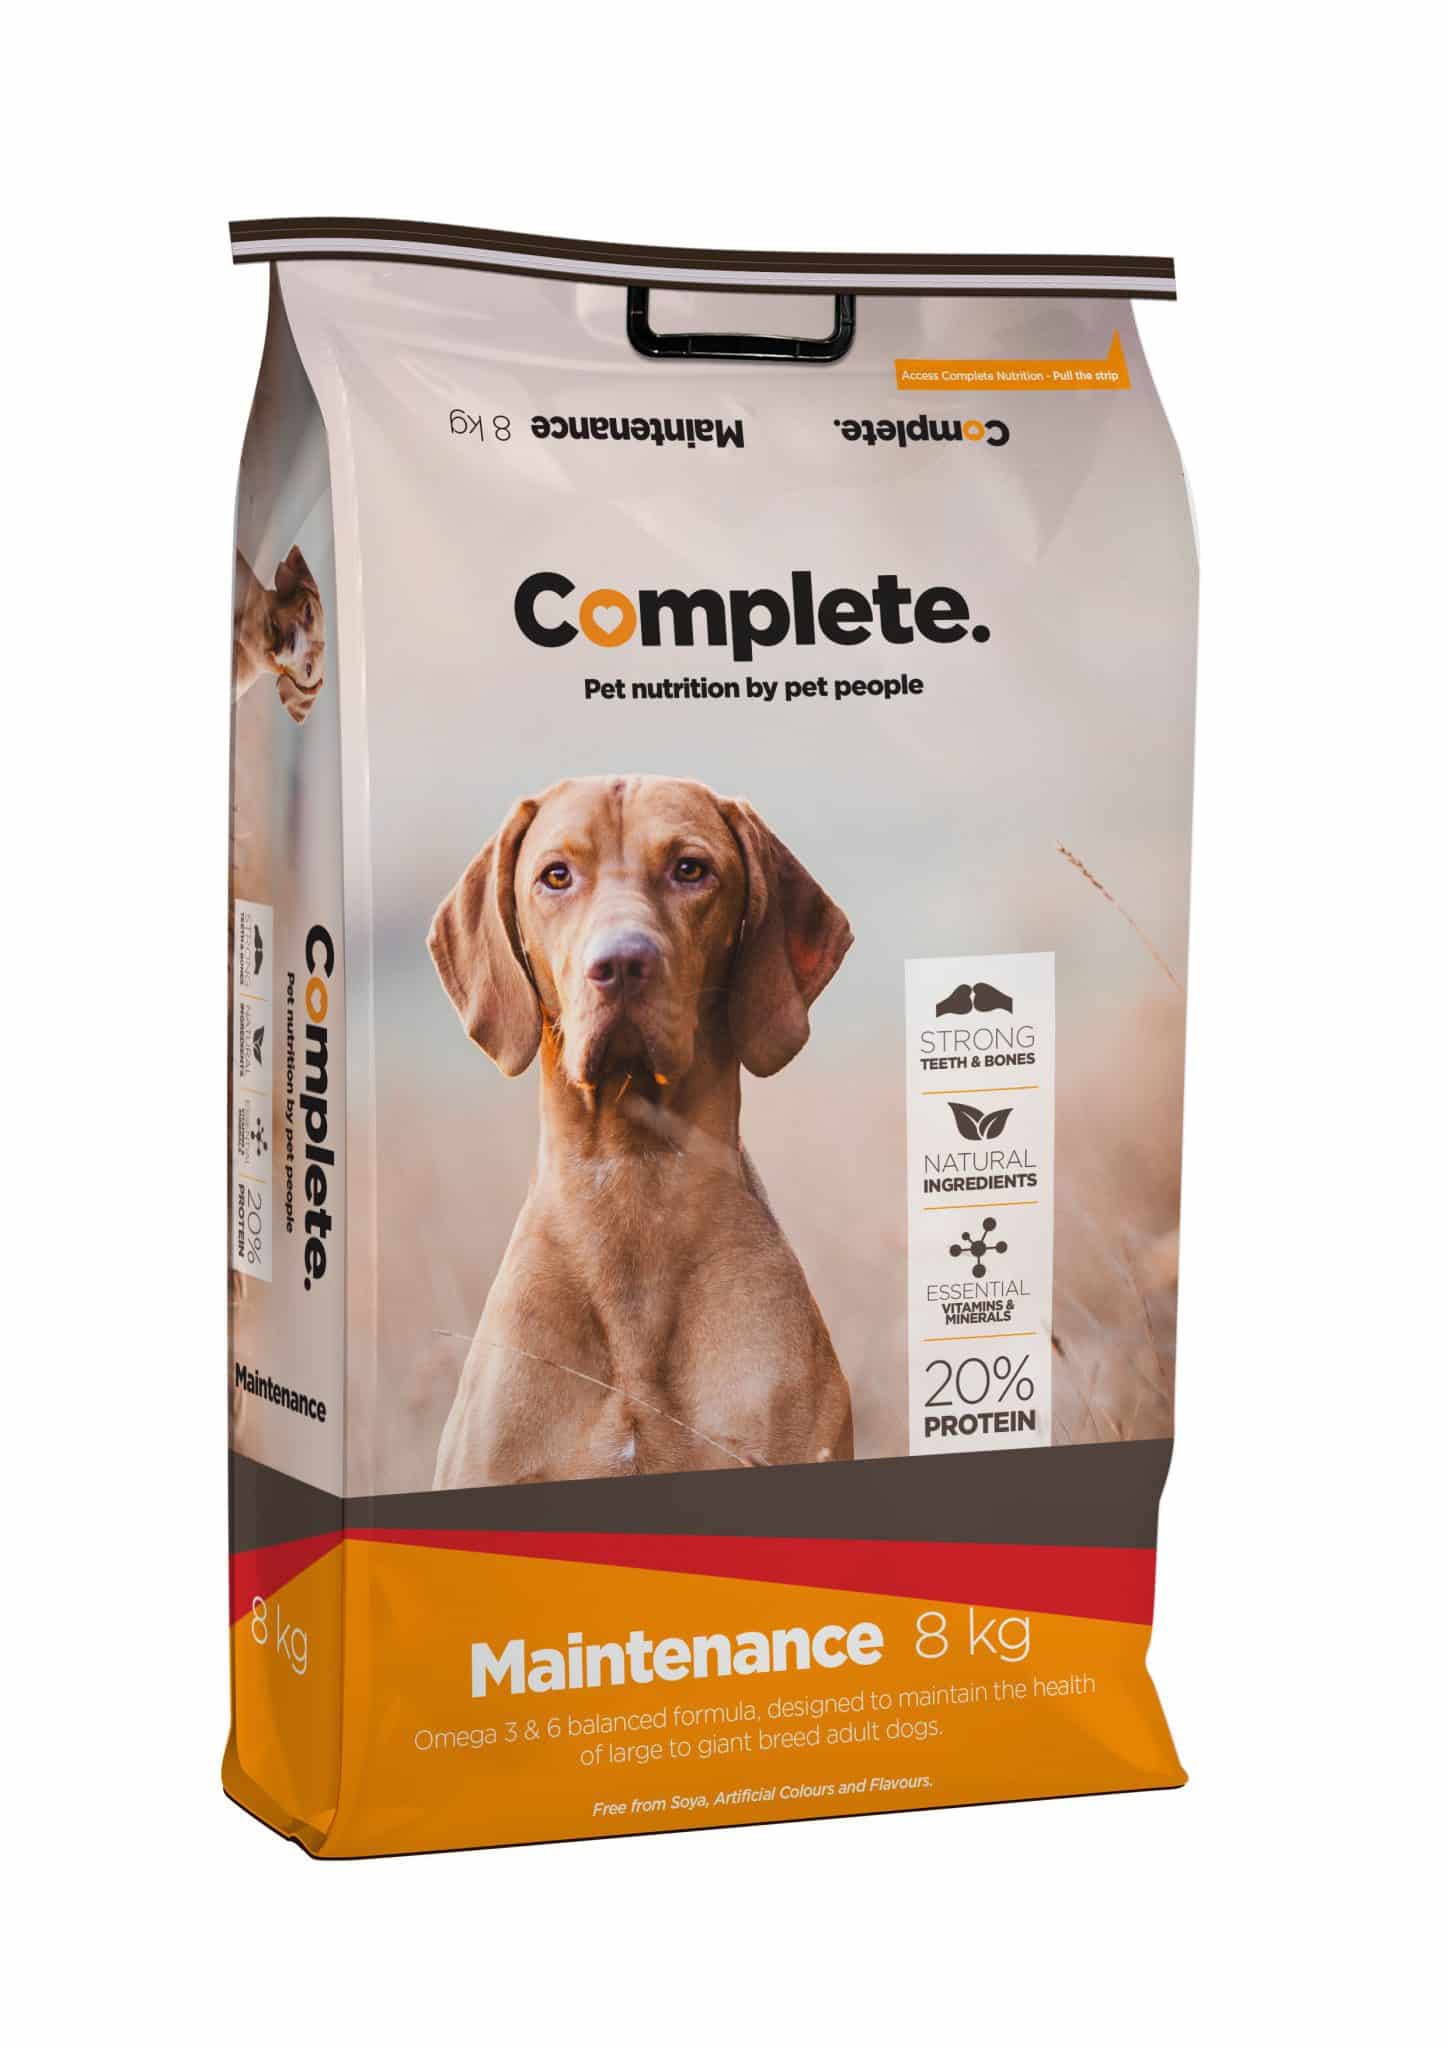 A 8kg bag of Complete maintenance dog food.